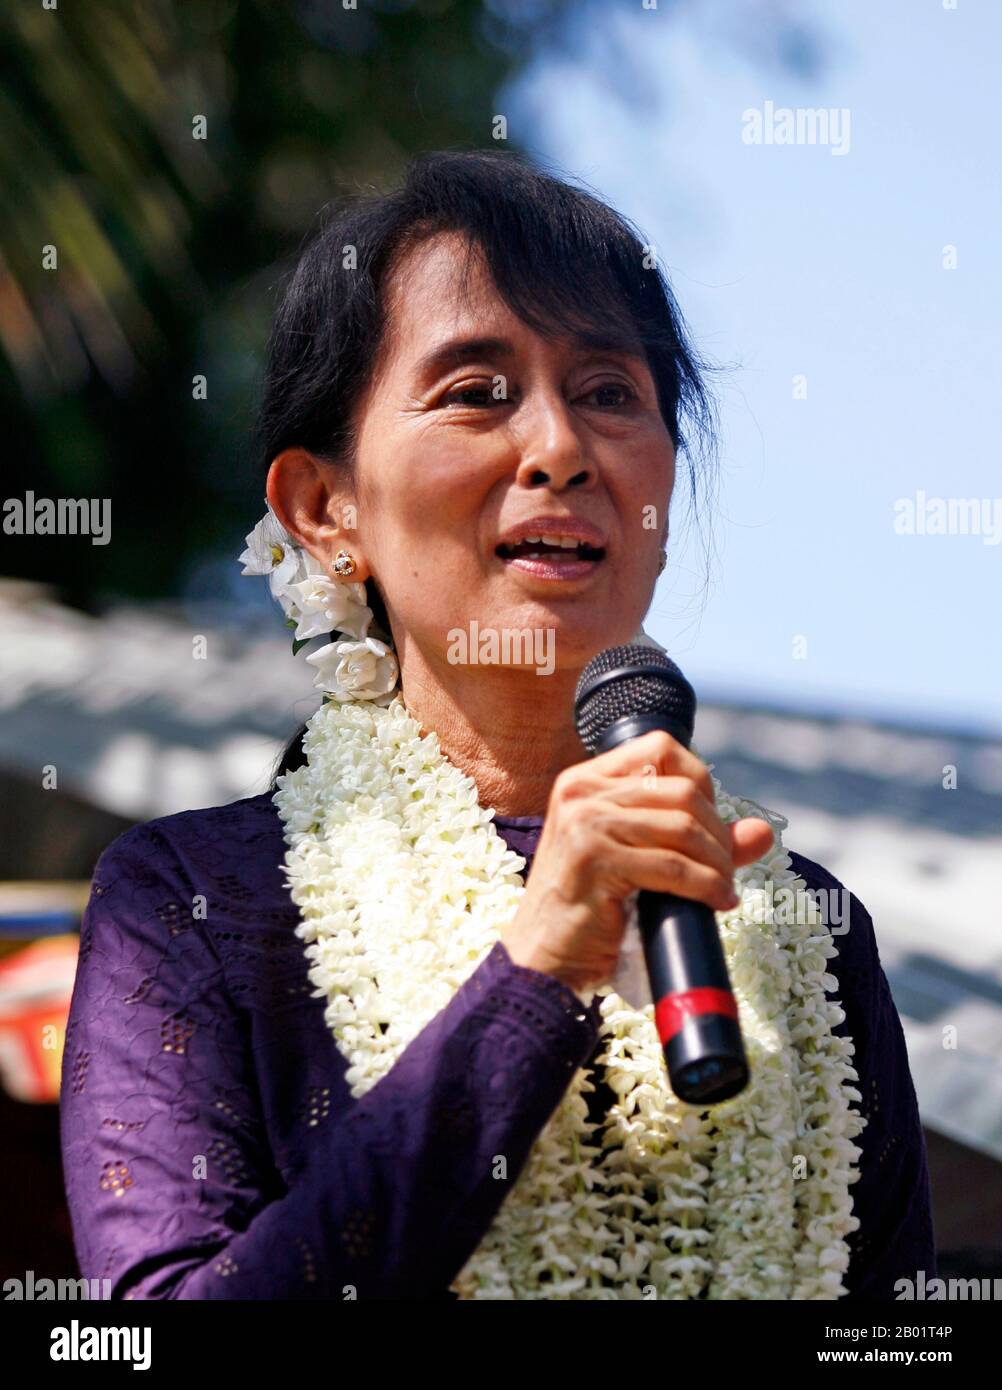 Birma/Myanmar: Vorsitzende der Nationalen Liga für Demokratie, Aung San Suu Kyi, sprach am 17. November 2011 in Hlaing Thar Yar Township, Yangon. Foto: Htoo Tay ZAR (CC BY-SA 3,0 Lizenz). Aung San Suu Kyi (* 19. Juni 1945 in Myanmar) ist eine burmesische Diplomatin, Politikerin und Autorin, die von 2016 bis 2021 als Staatsrätin Myanmars diente. Sie war die jüngste Tochter von Aung San, dem Vater der Nation des modernen Myanmars, und leitete die National League for Democracy (NLD). Stockfoto